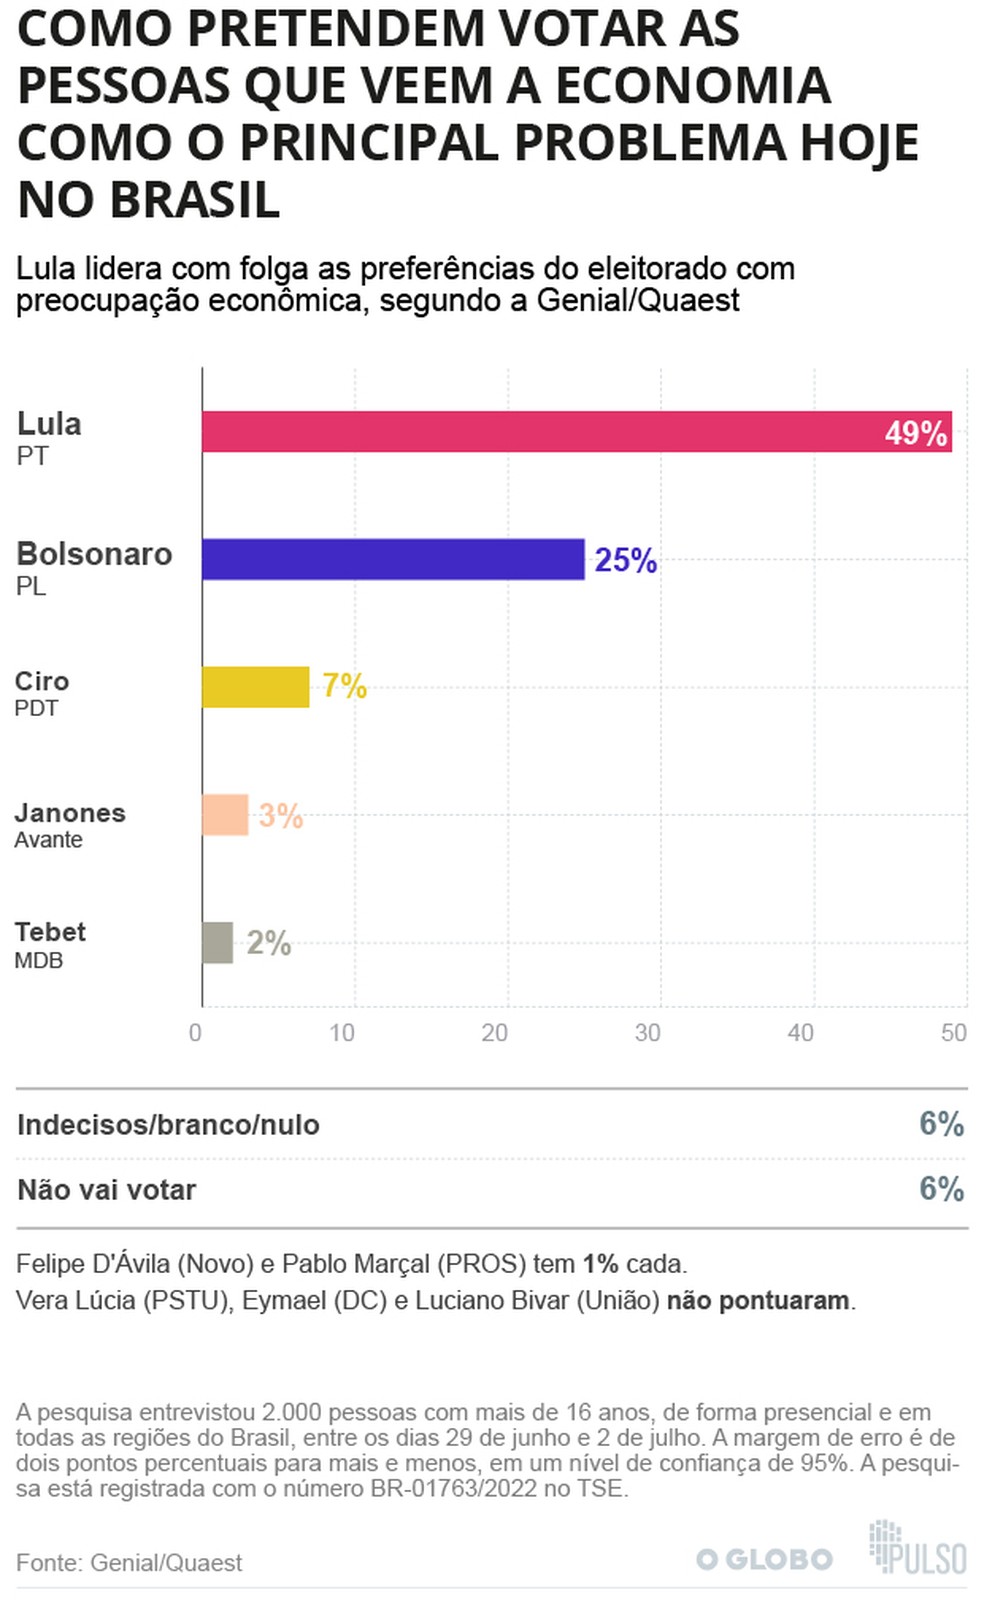 O voto guiado pela preocupaÃ§Ã£o com a economia favorece o ex-presidente Lula, segundo a Genial/Quaest â Foto: Arte / O Globo